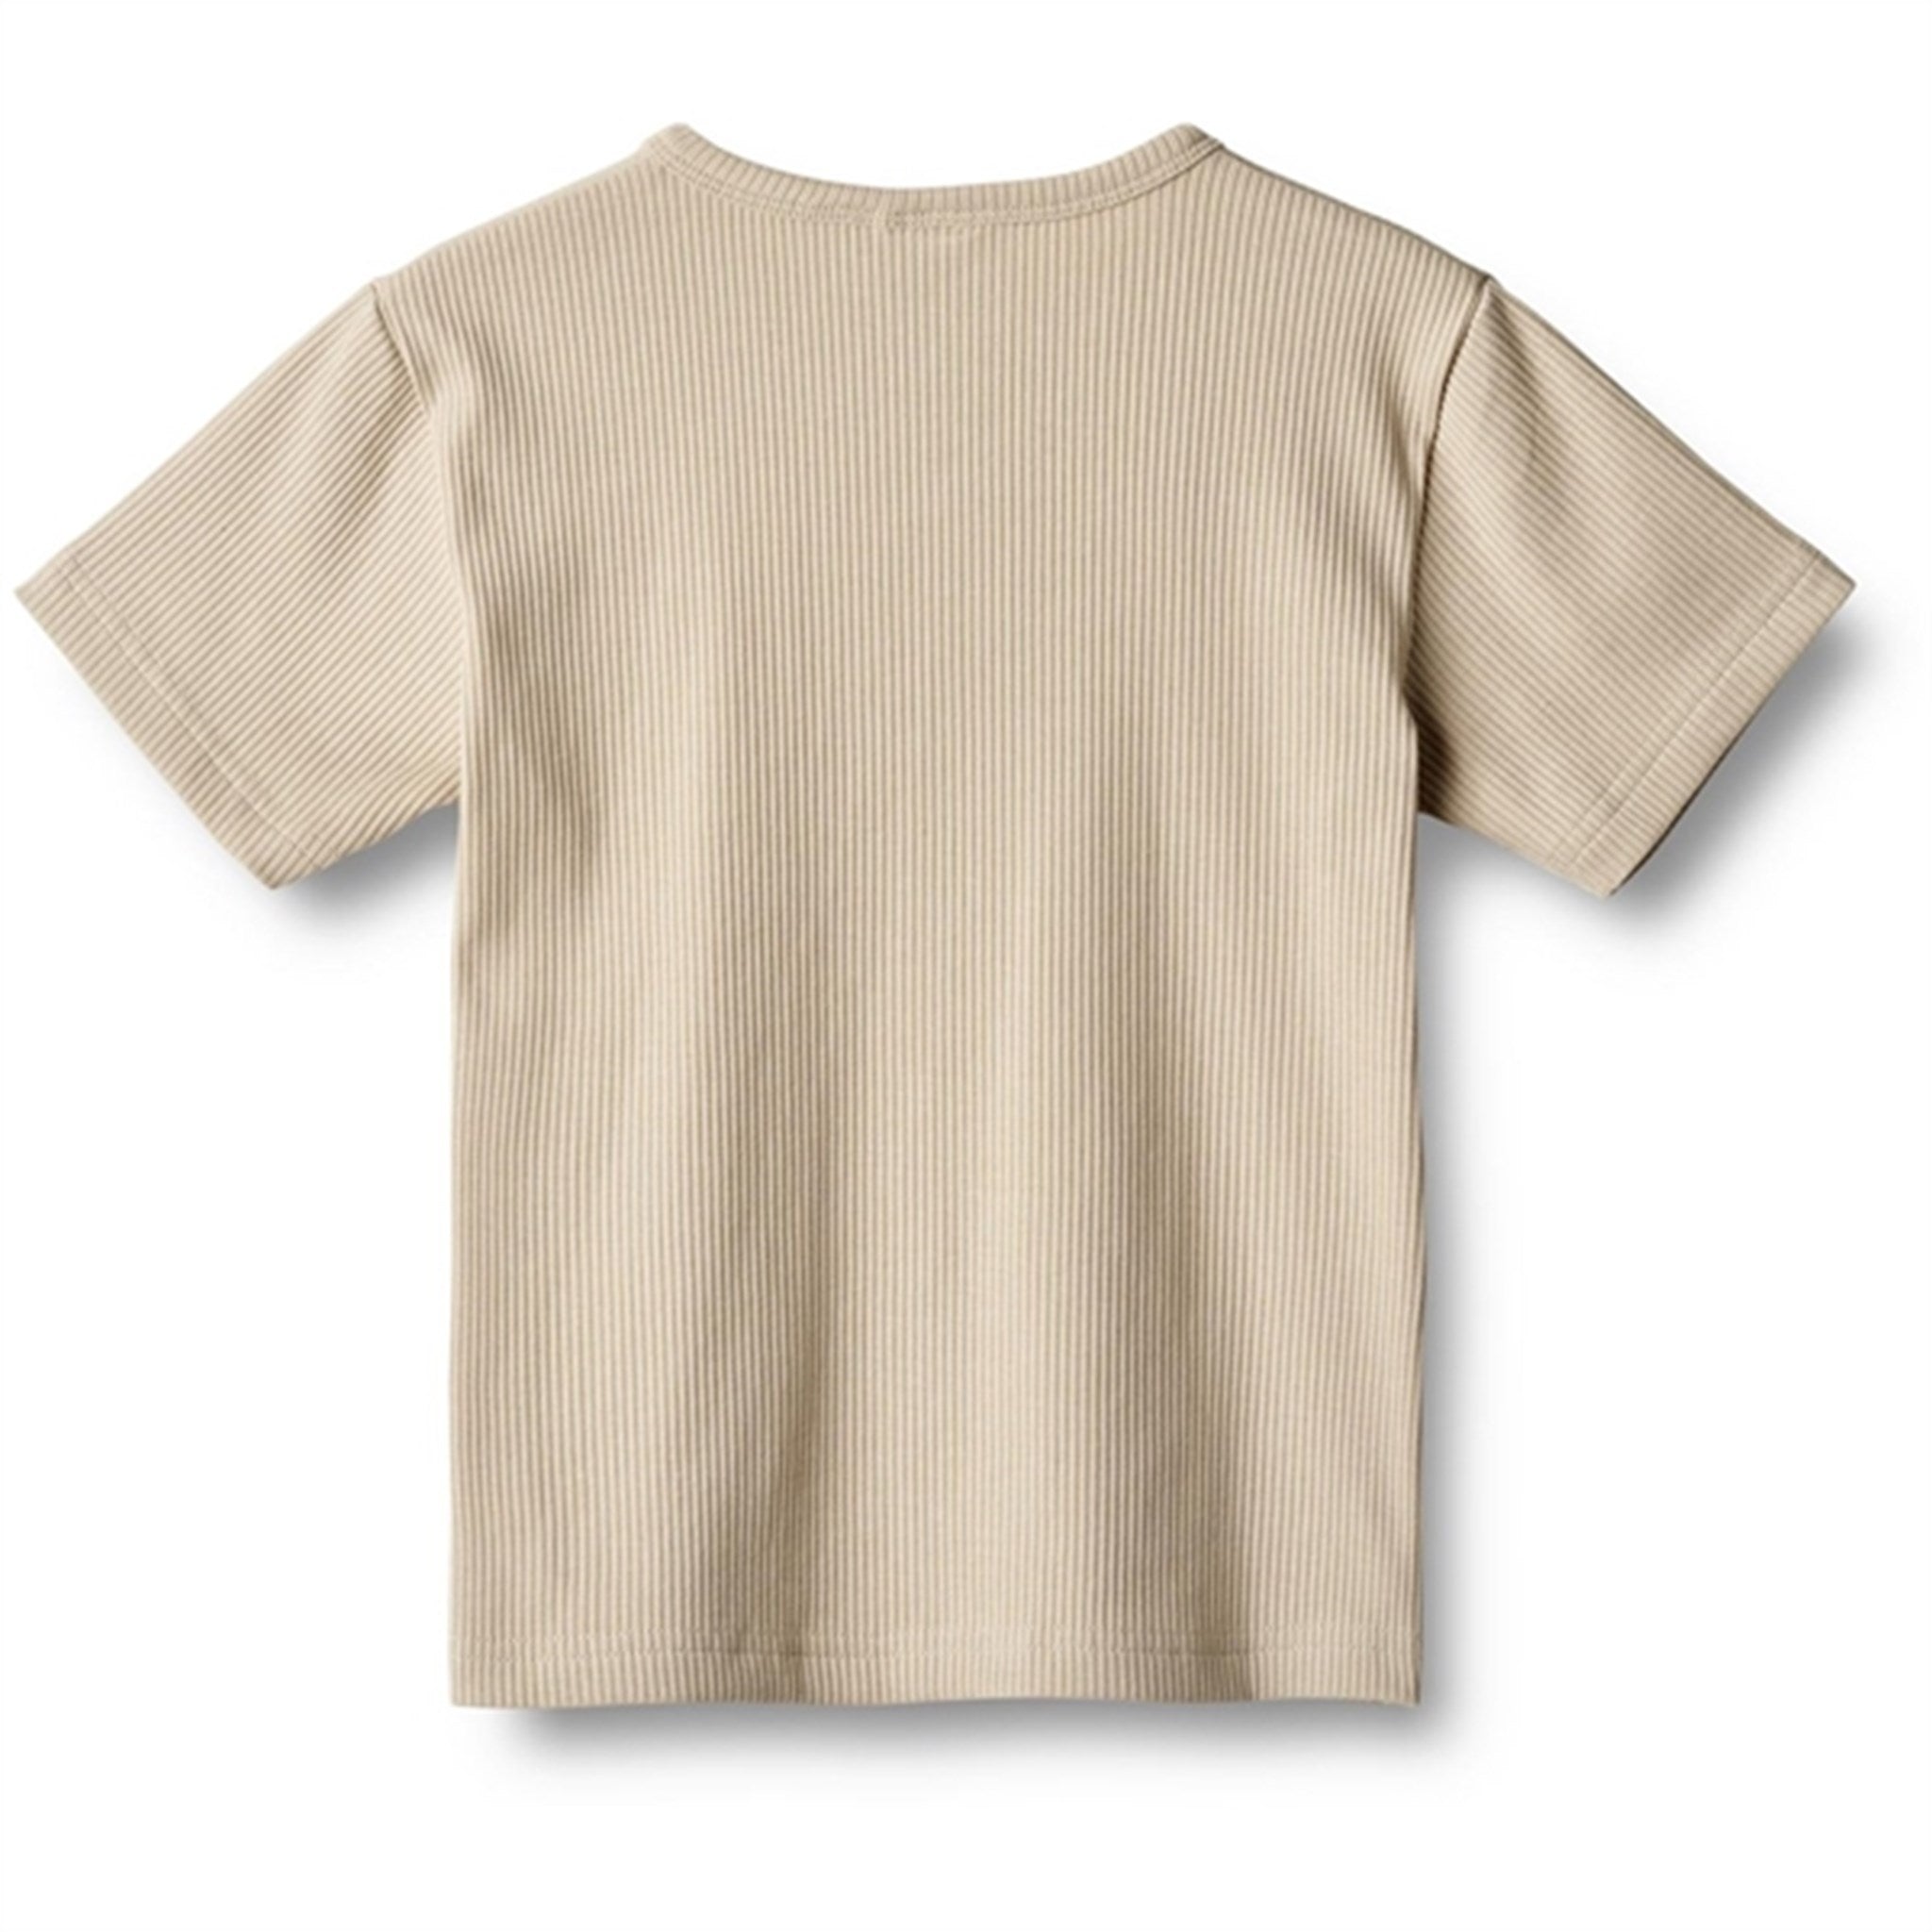 Wheat Feather Gray T-shirt Lumi 2